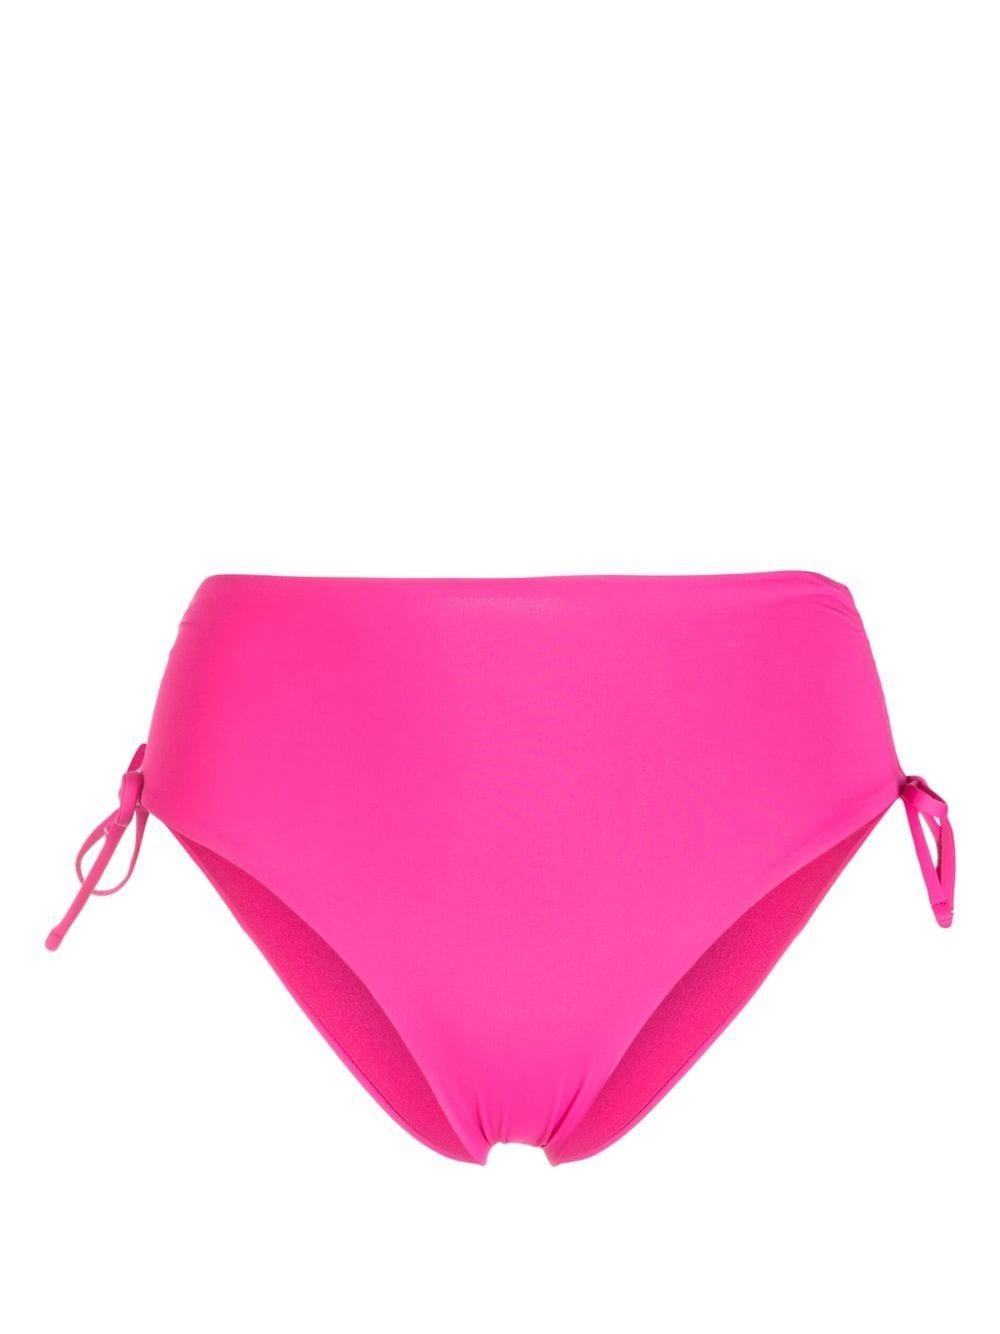 Pinko Lunia Slip Bikini Bottoms in Pink | Lyst